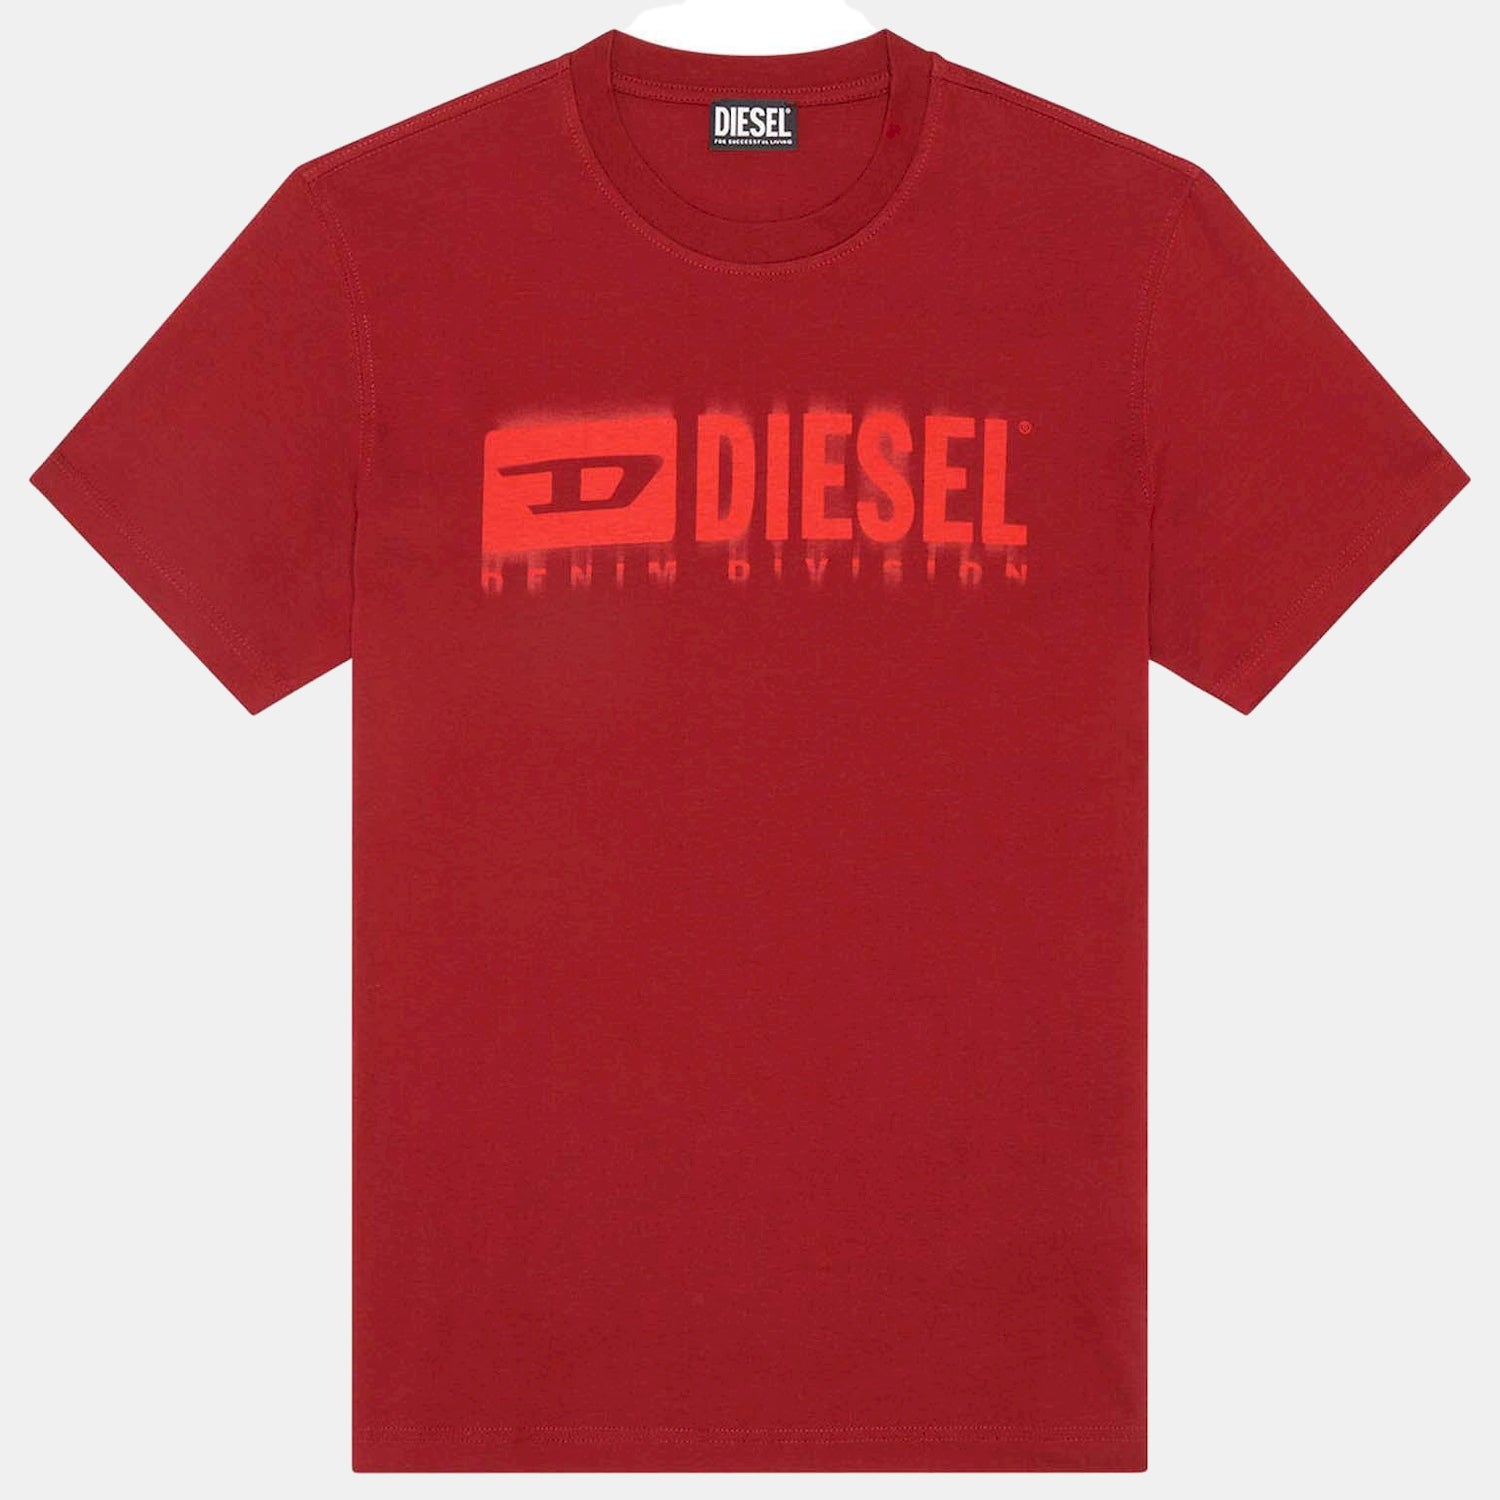 Diesel T Shirt A03593 0catm Red Vermelho_shot1